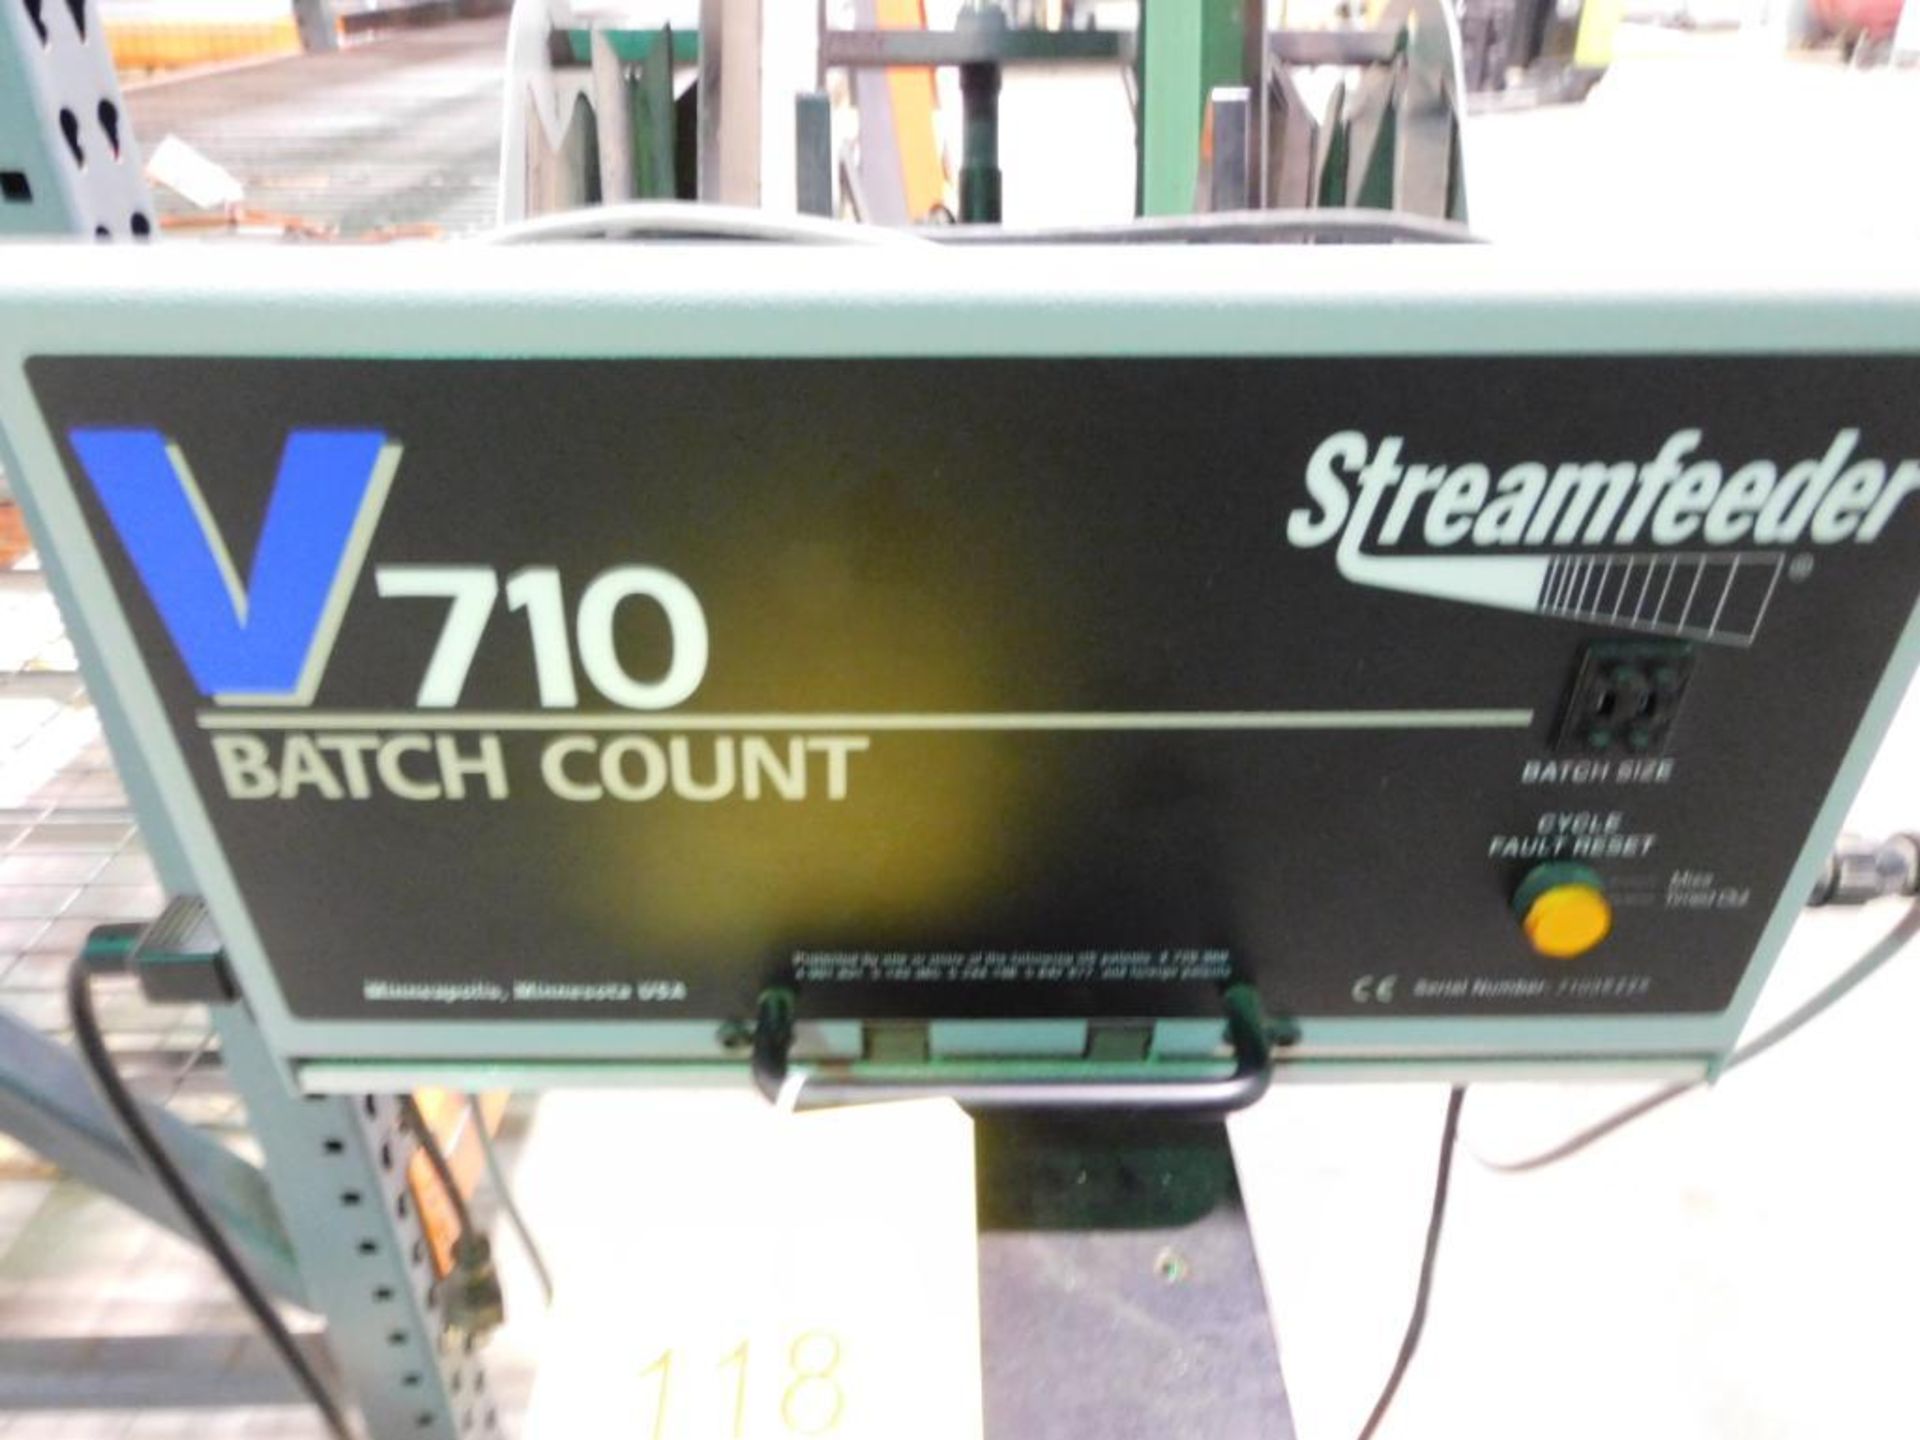 Streamfeeder V710 Batch Feeder - Image 2 of 2